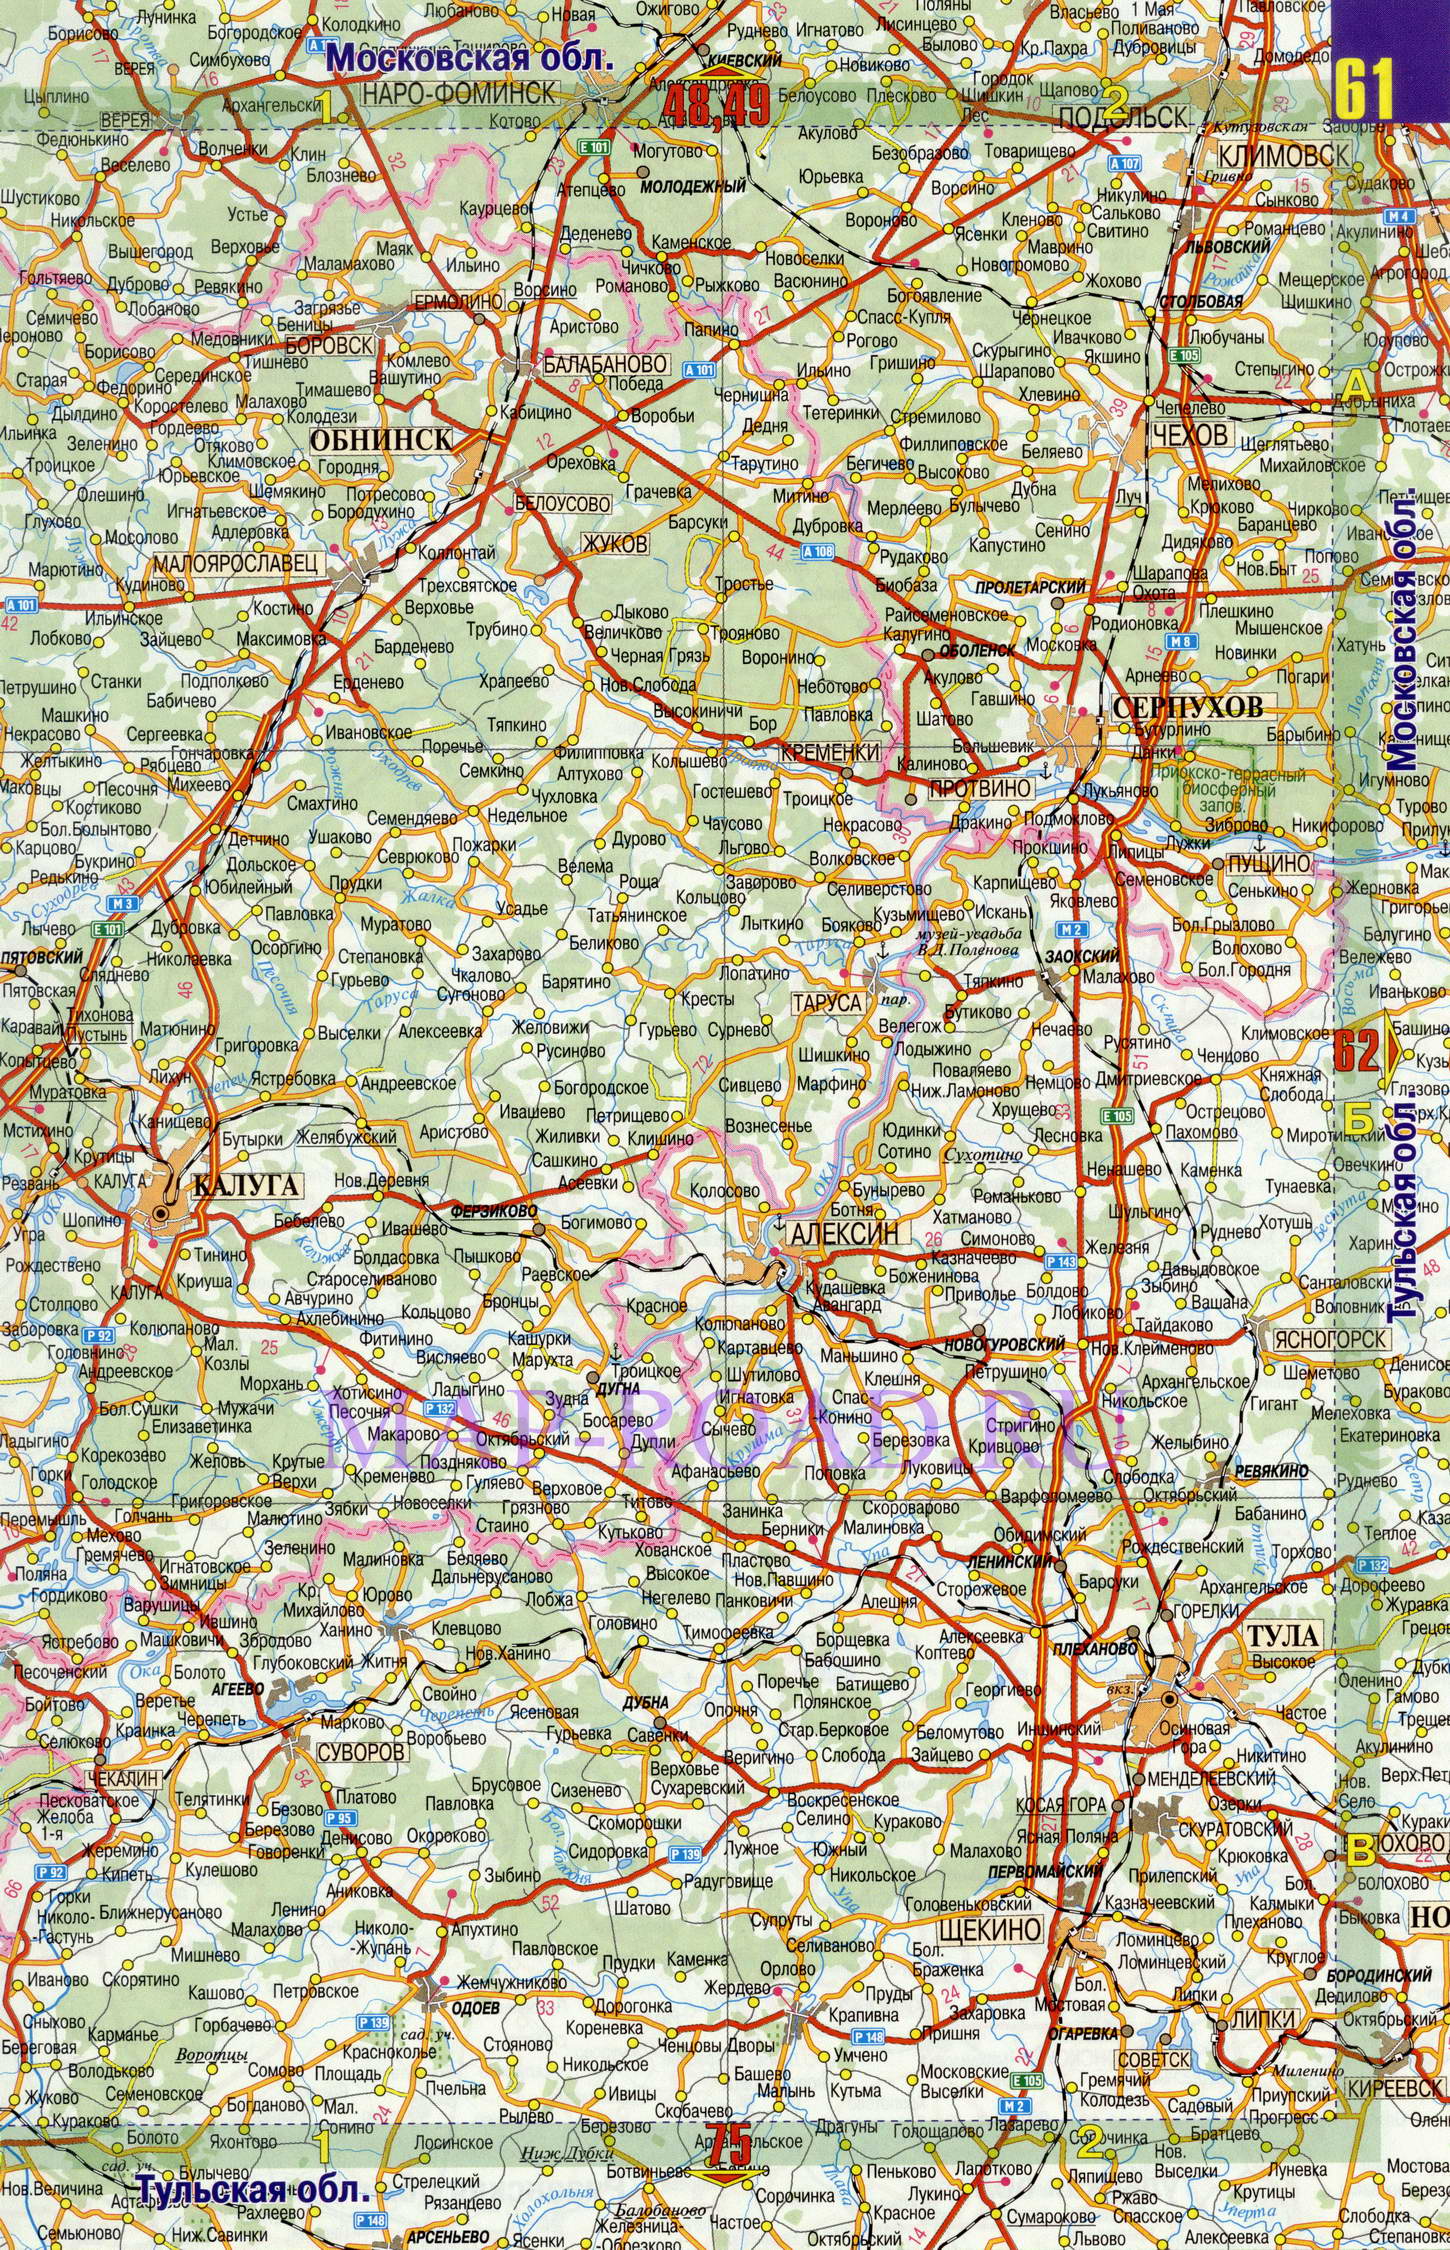 Карты тульских дорог. Карта автодорог Тульской области подробная. Карта дорог Тульской области подробная. Карта Тульской области с районами и дорогами. Карта дорог Тульской области автомобильных подробная.